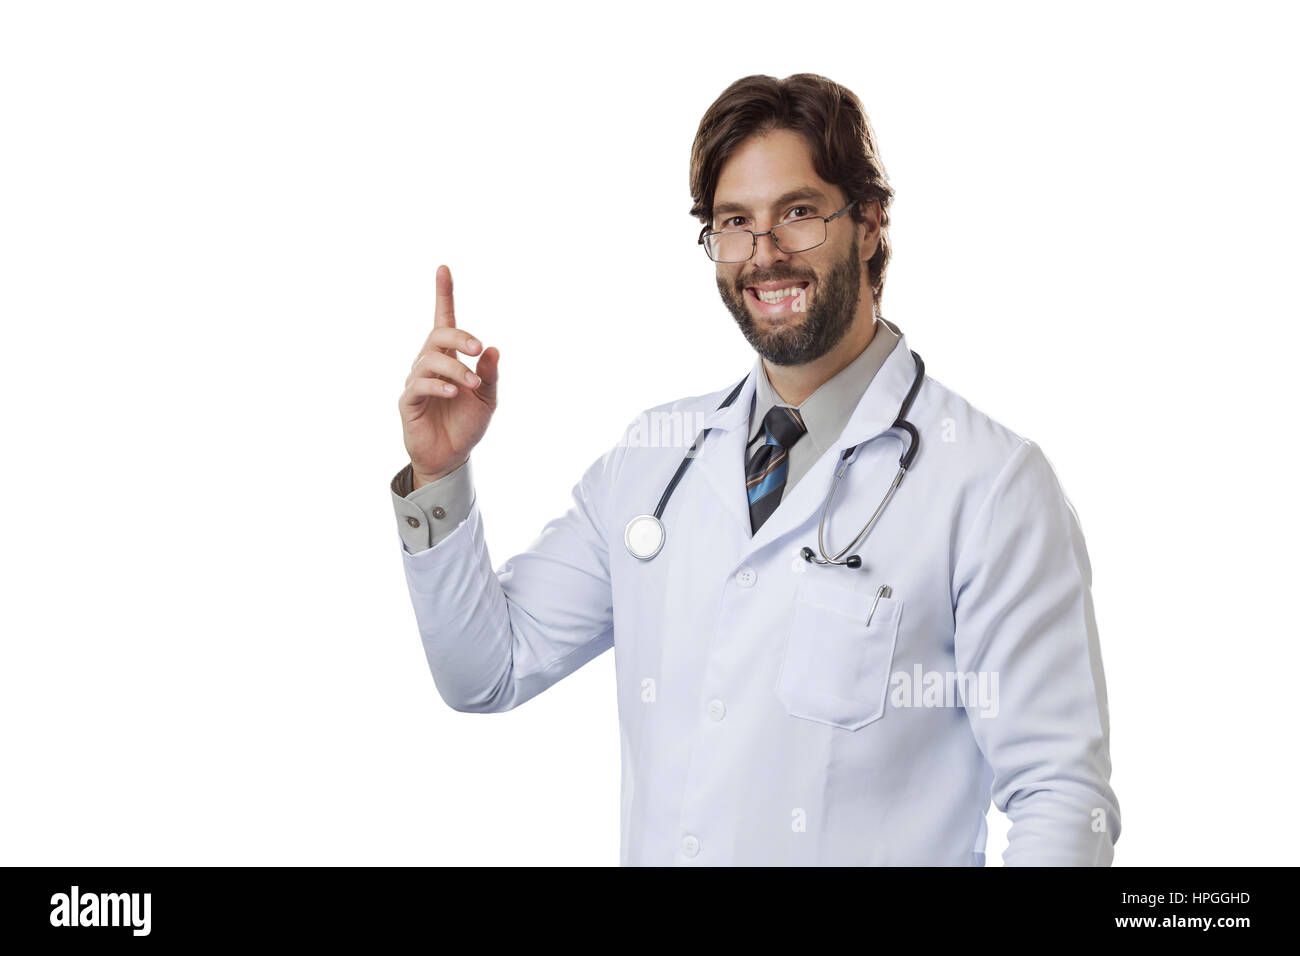 Männlichen Arzt deuten sich auf einem weißen Hintergrund. Stockfoto